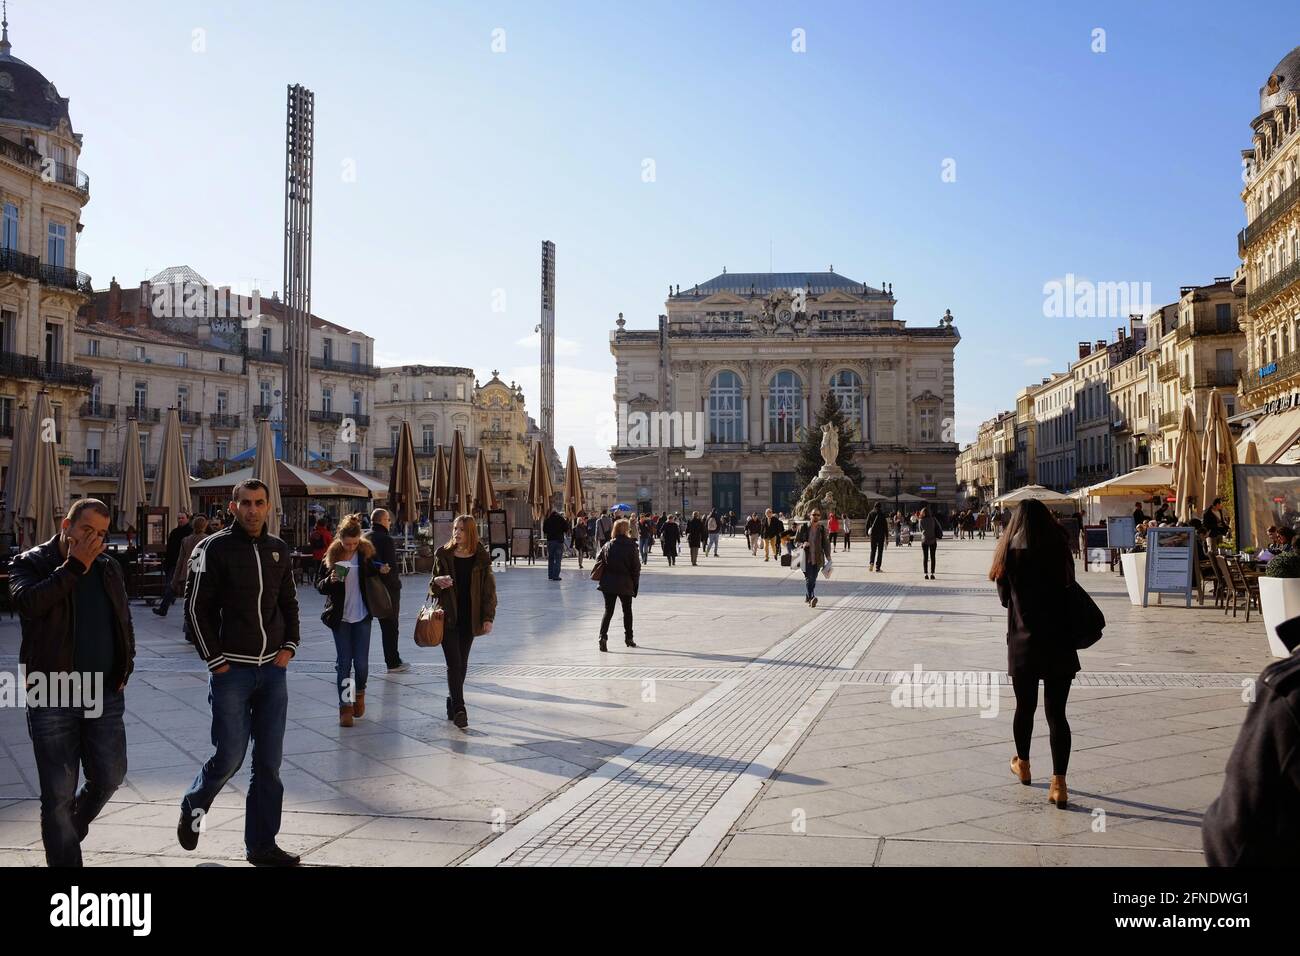 Menschen, die auf dem Comedy Plaza vor der Oper, im Zentrum von Montpellier, in der Provinz von Barcelona, im Süden Frankreichs, herumlaufen und einkaufen Stockfoto